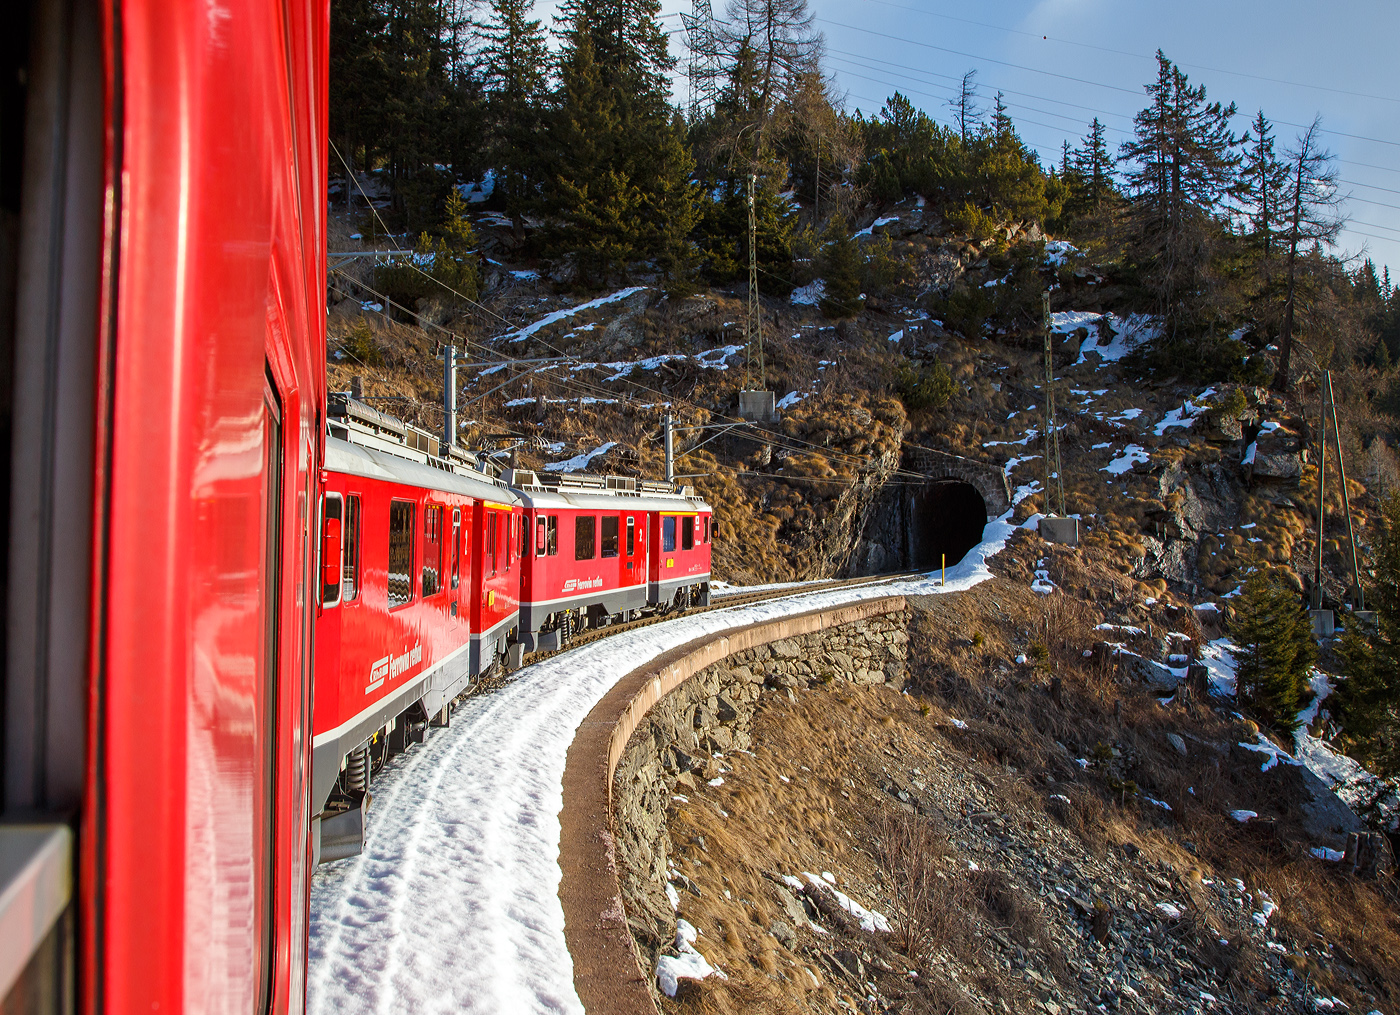 Geführt RhB ABe 4/4 III Bernina-Triebwagen 54  Hakone / 箱根町  und 53  Tirano  fährt unser RhB Bernina-Regio von Tirano nach St. Moritz am 20 Februar 2017 vom Puschlav (Val Poschiavo) hinauf in Richtung Cavaglia 1.692 m ü. M. (bzw. Alp Grüm  und  Ospizio Bernina).

Hier fahren wir gleich in den 46 m langen Puntaltotunnel (bei km 33,787) ein.